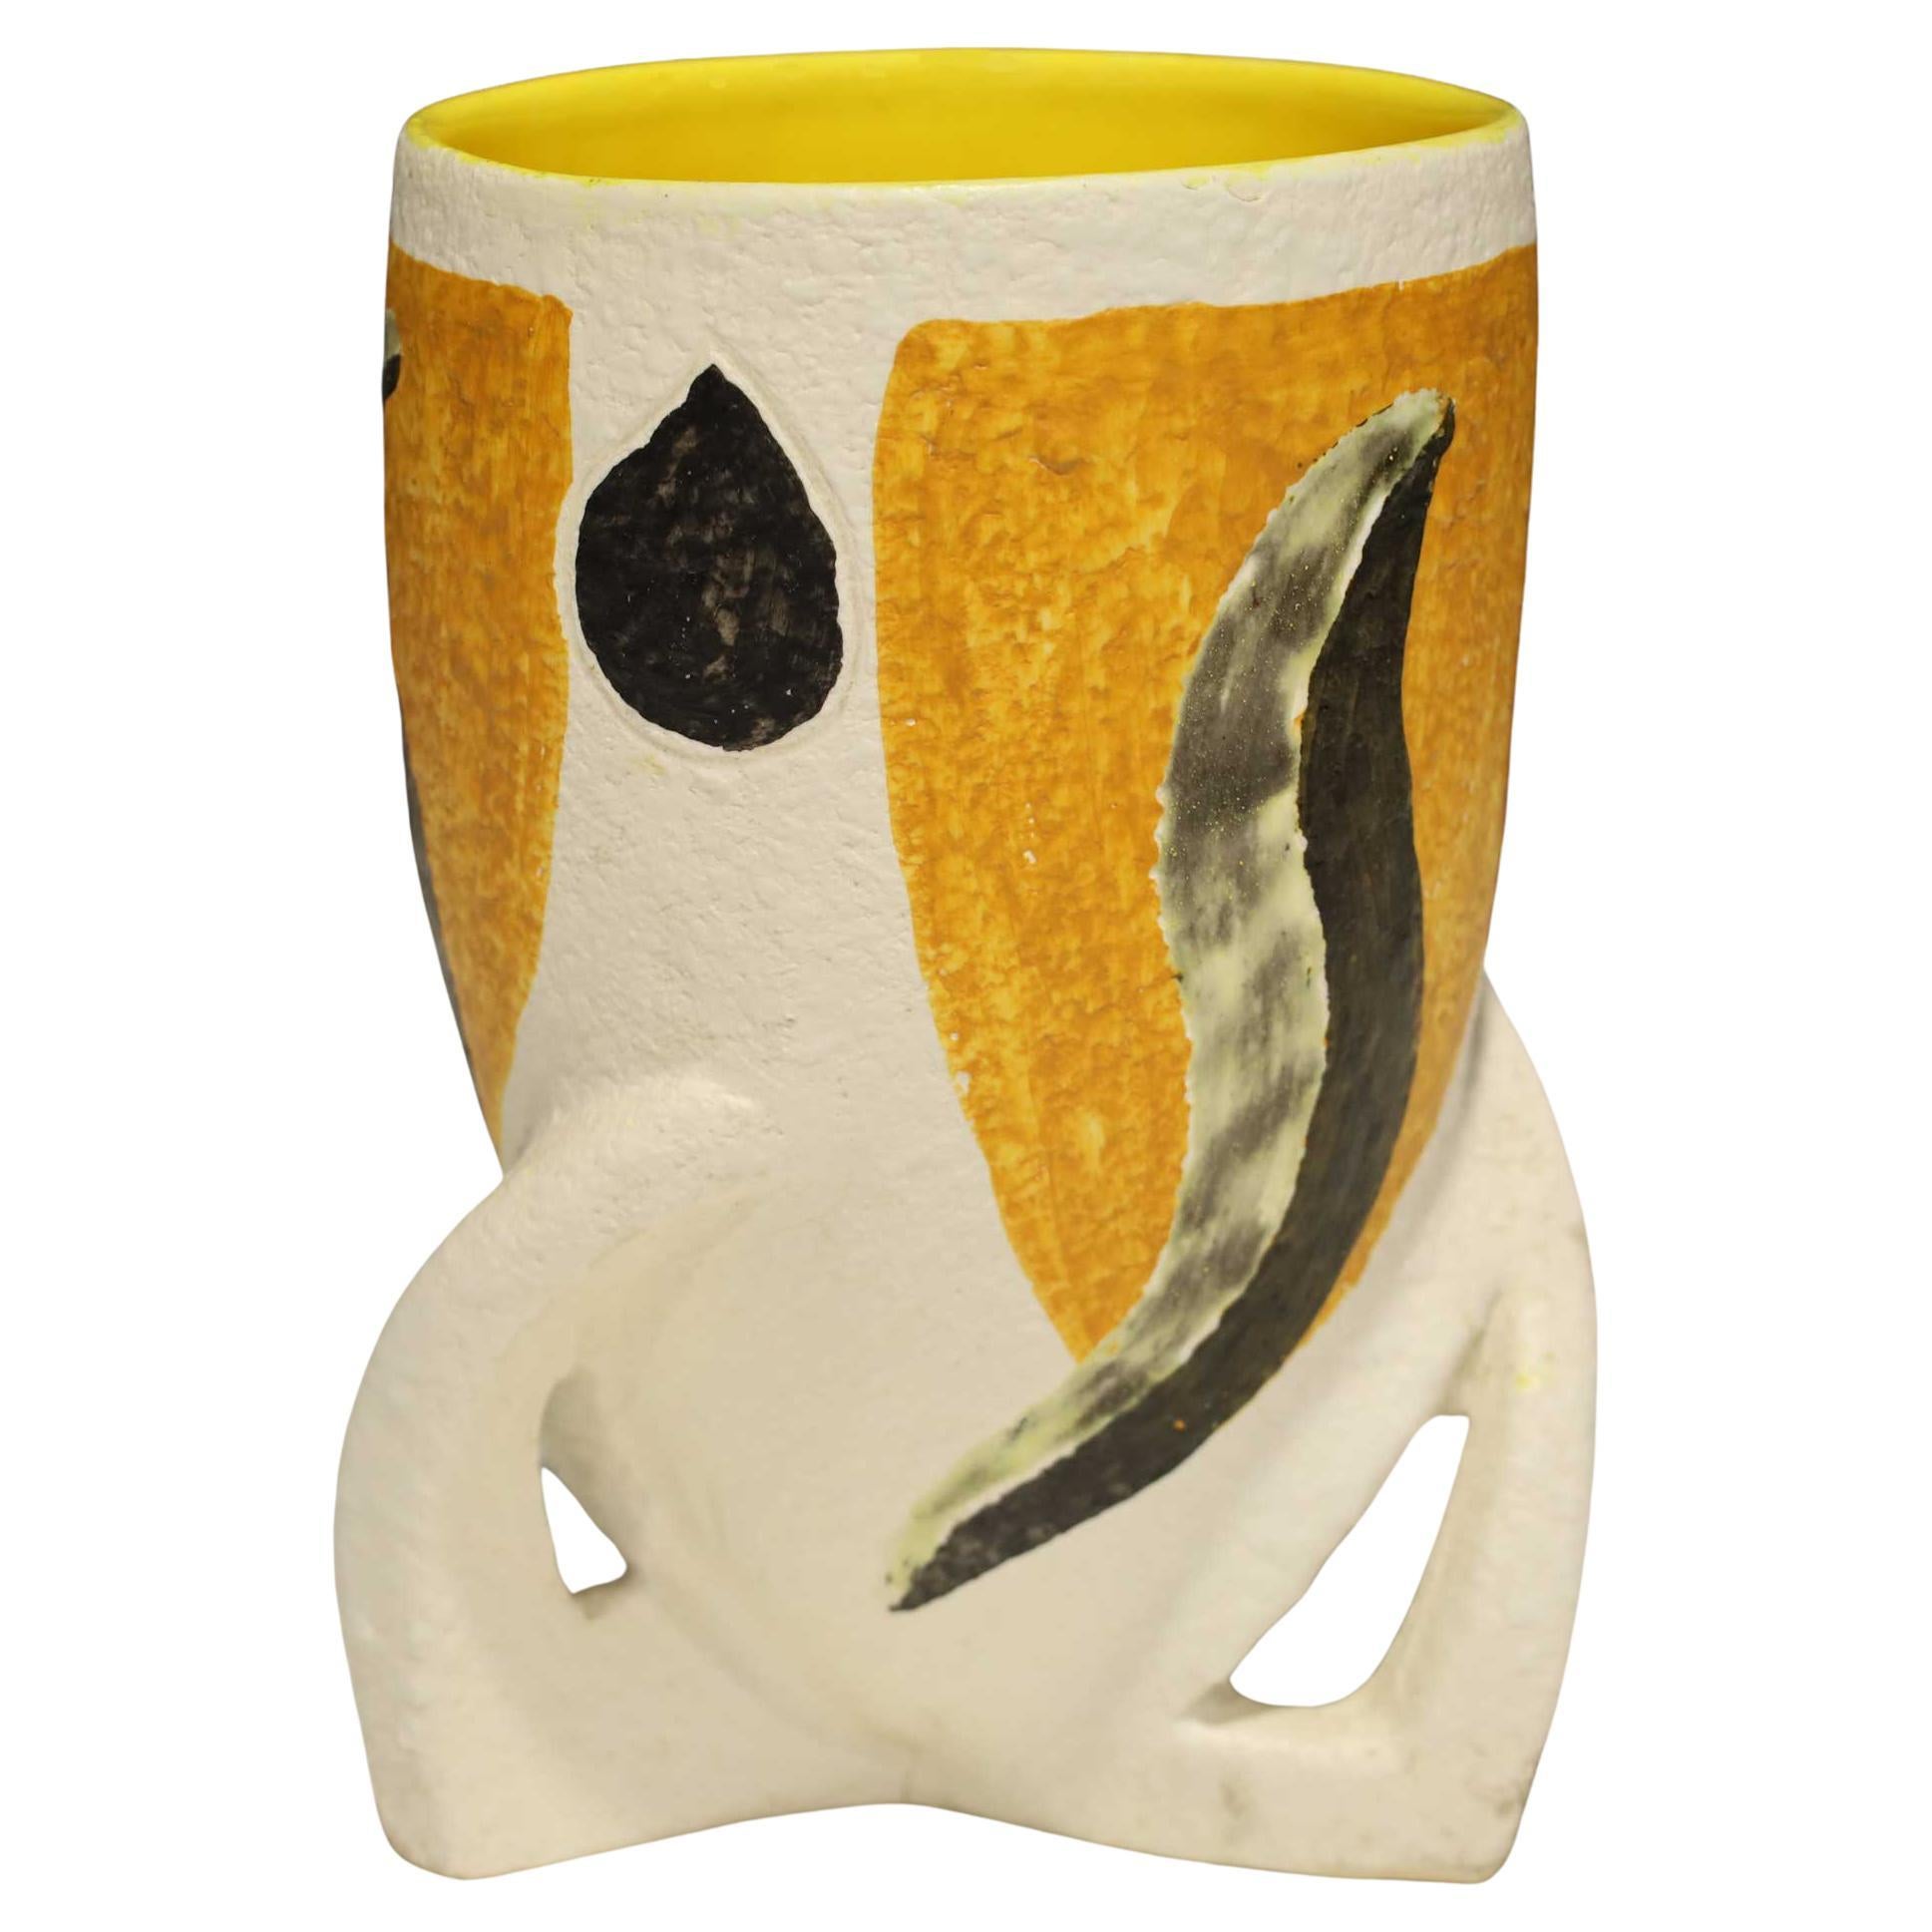 Giacomo Balla zugeschriebene Vase in Gelb, Schwarz und Weiß